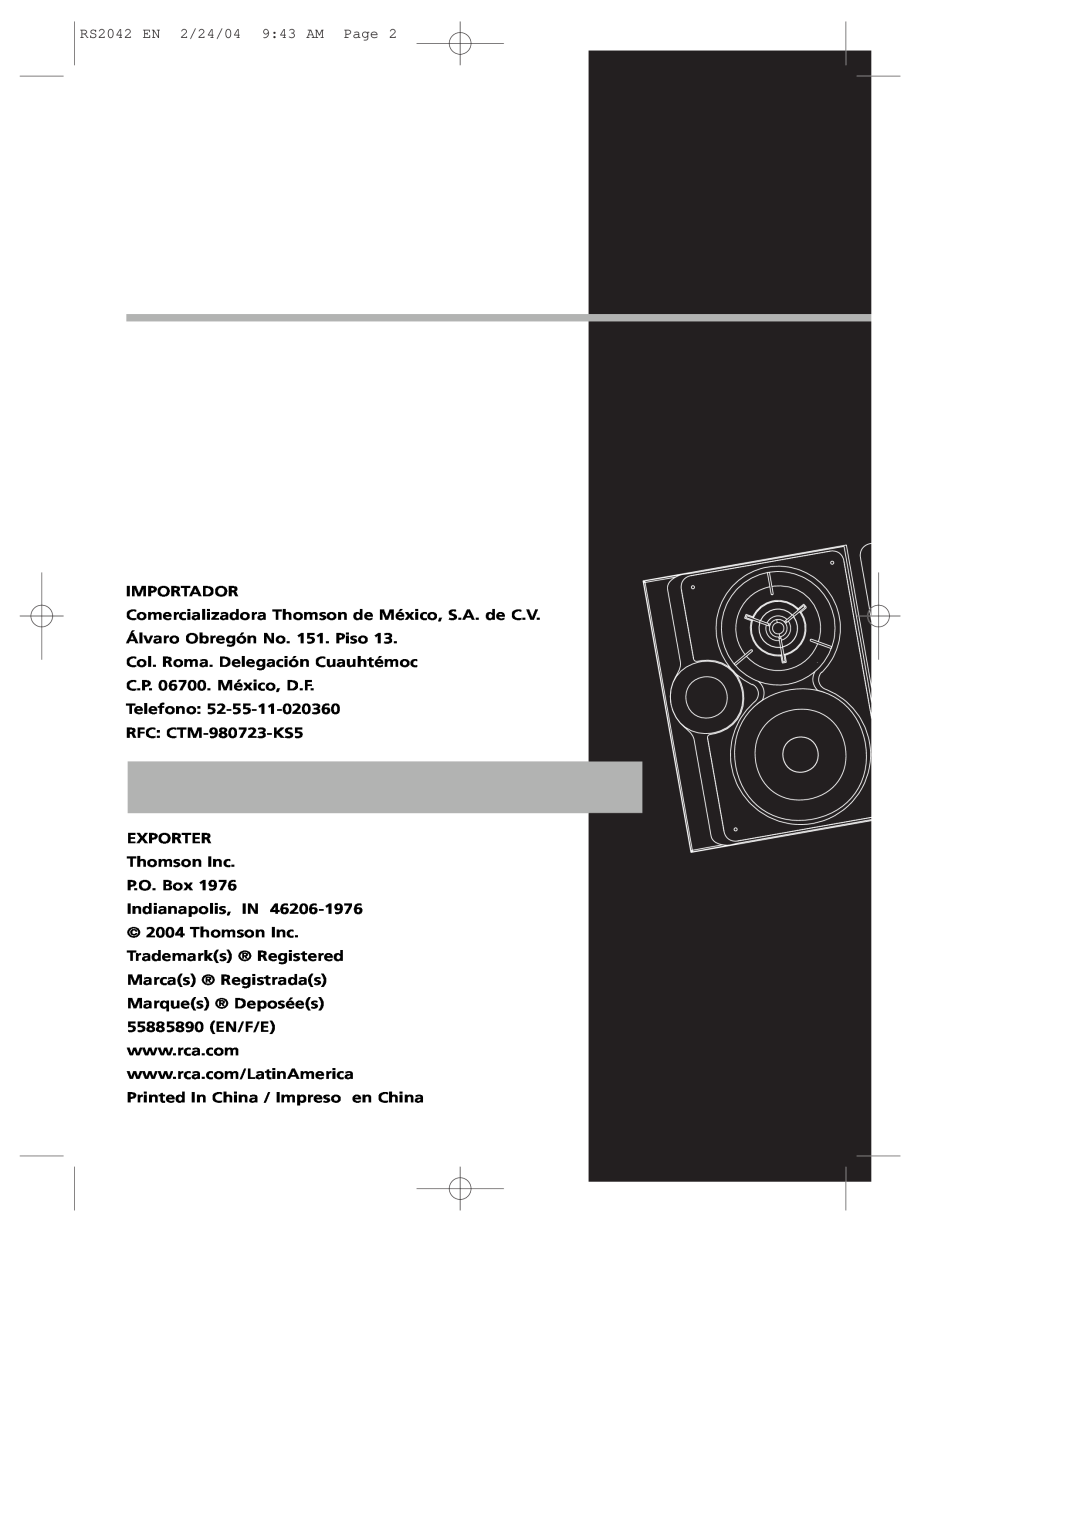 RCA RS2042 manual Importador, Col. Roma. Delegación Cuauhtémoc, C.P. 06700. México, D.F Telefono, RFC CTM-980723-KS5 